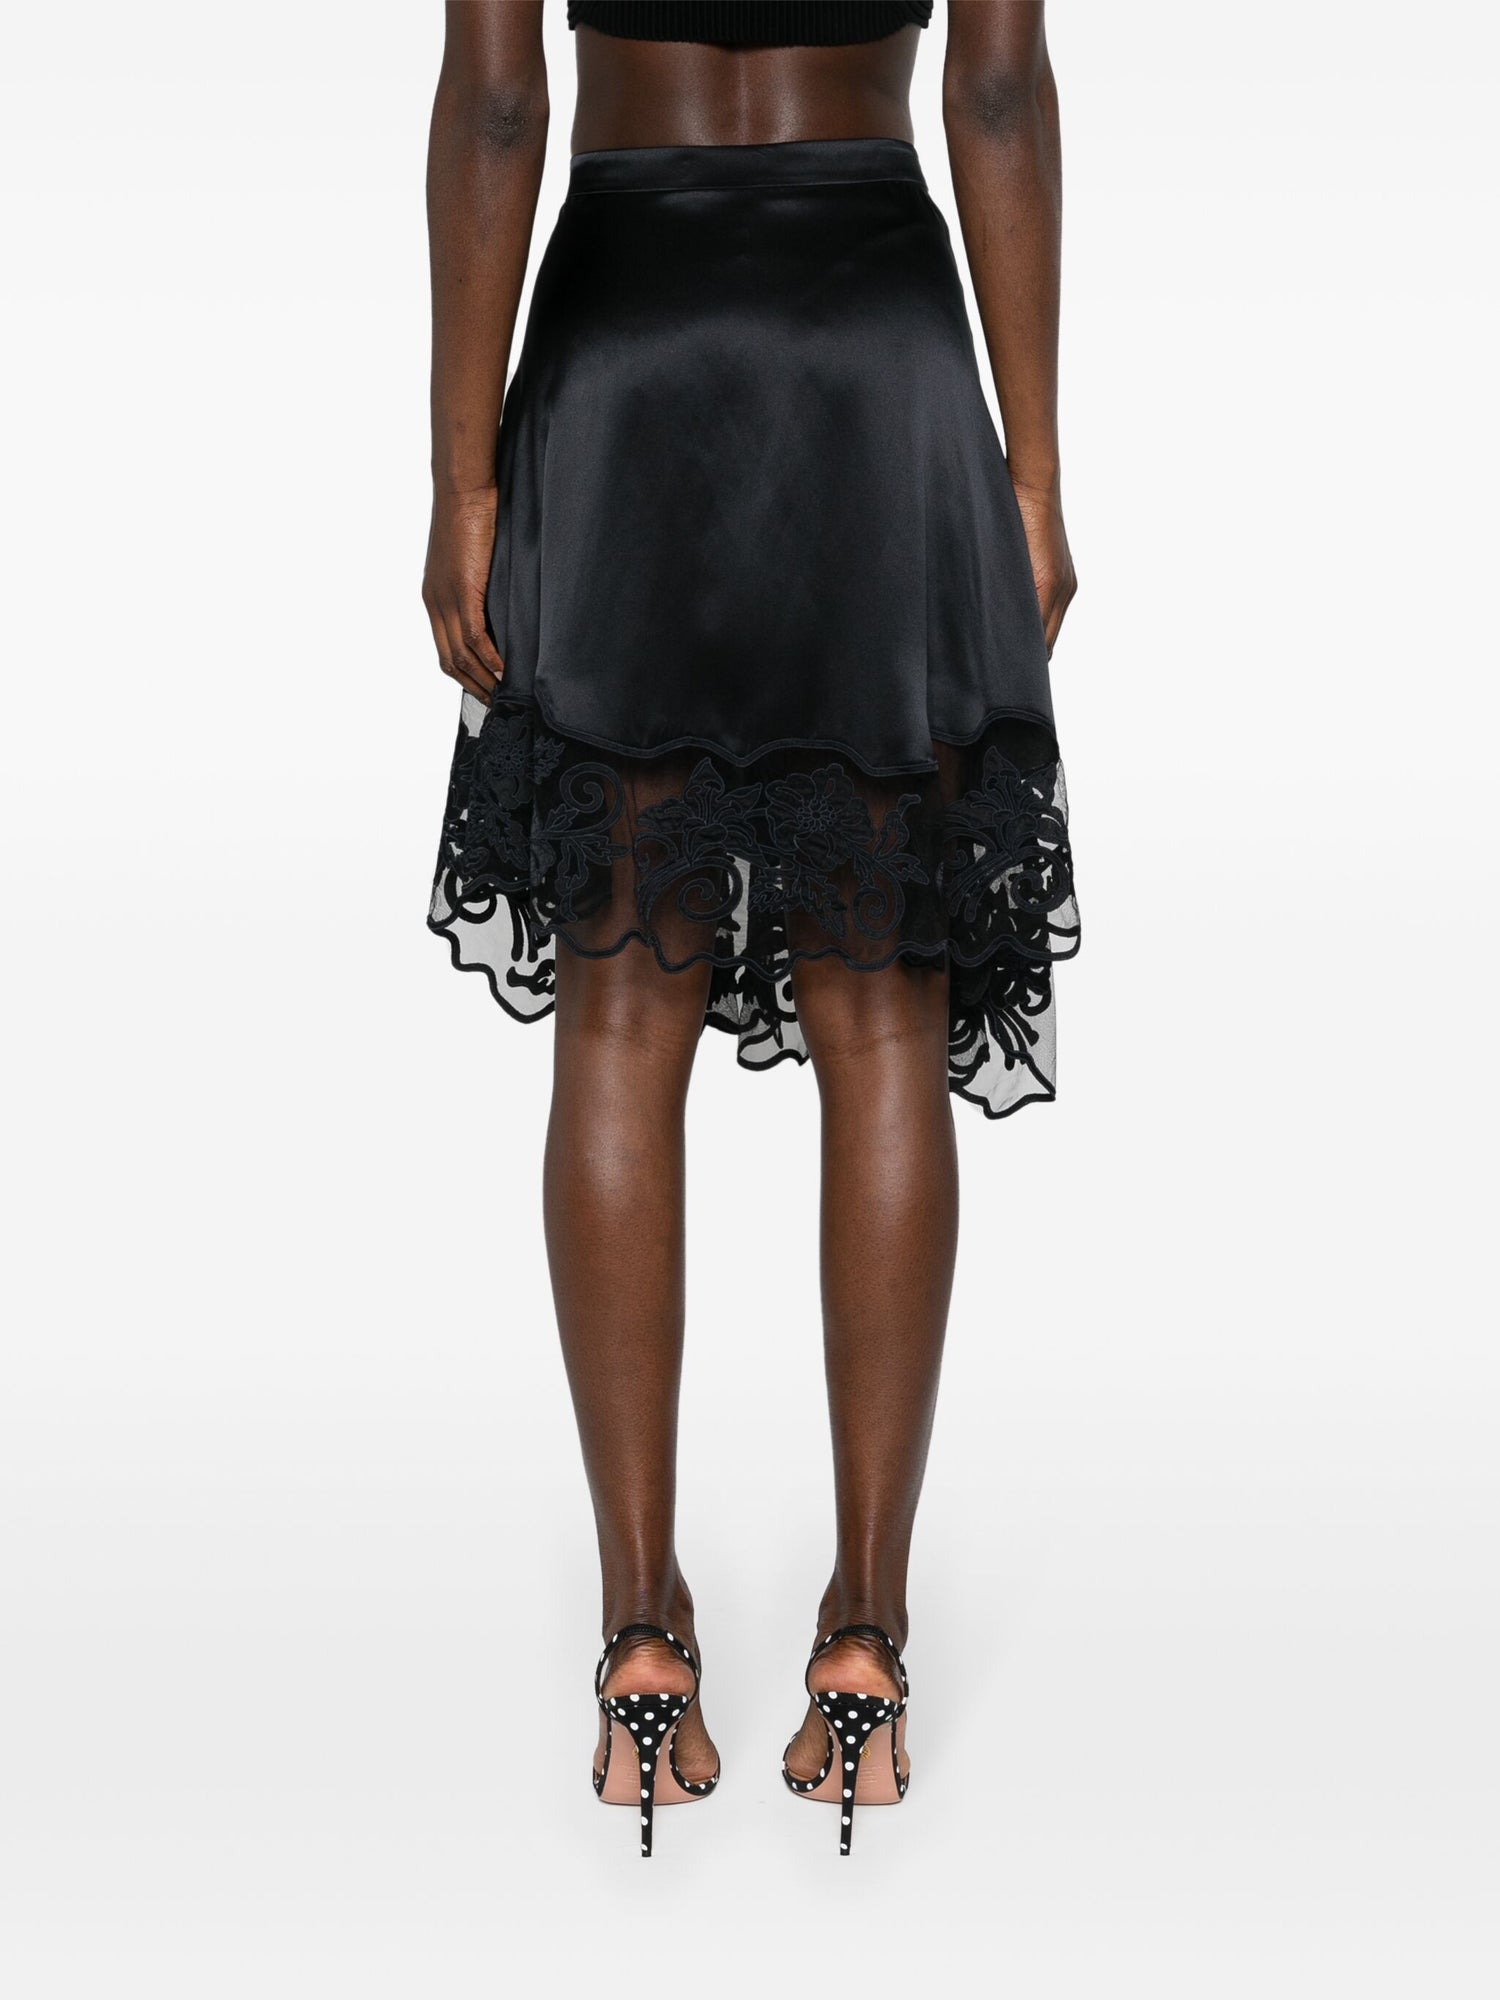 Avalon Skirt, Black